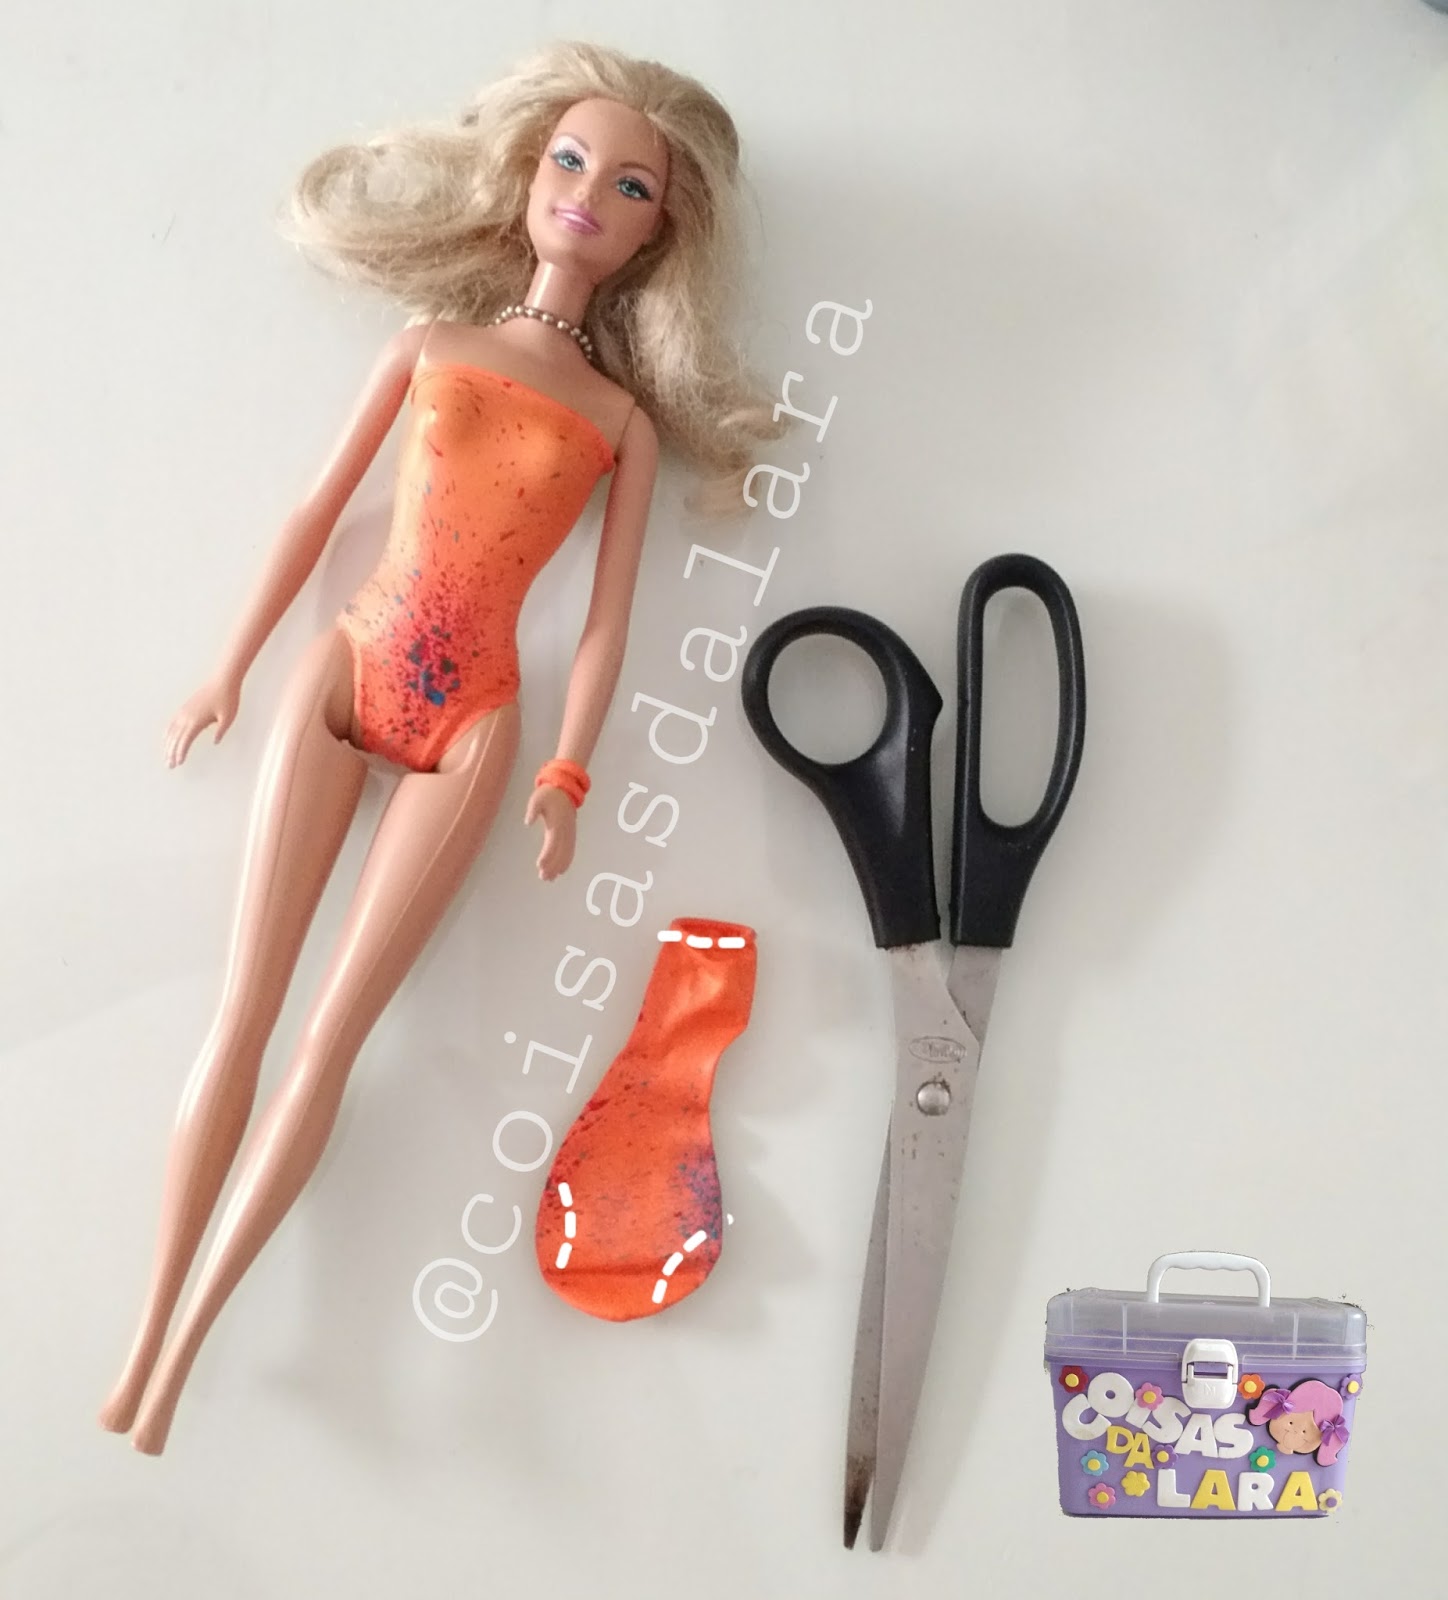 DIY roupas e biquínis para boneca Barbie (SEM COLA OU COSTURA) com bexigas/  balões